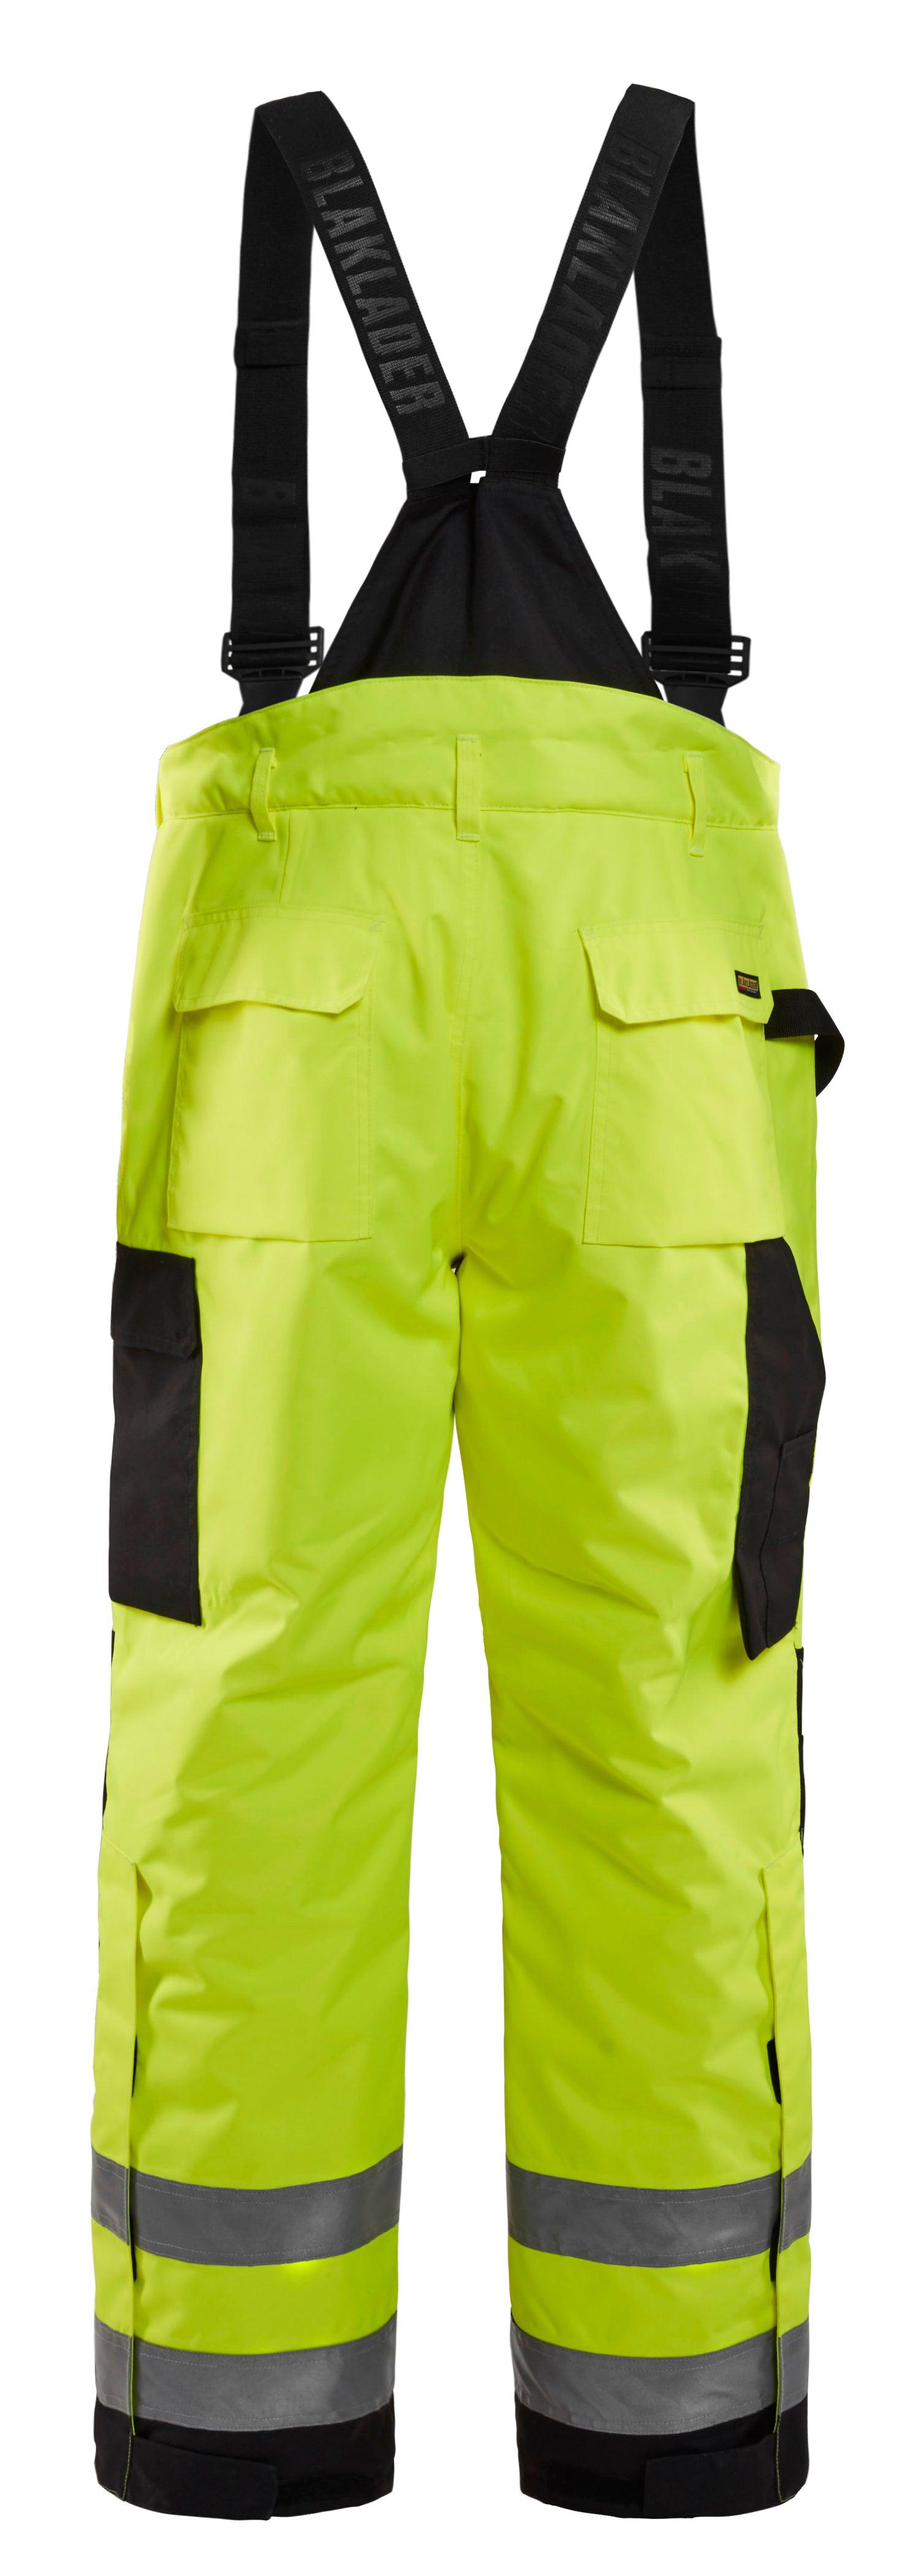 Blaklader 1689 Hi-Vis Waterproof Winter Lined Pants - Yellow Hi-Vis/Black - Trusted Gear Company LLC